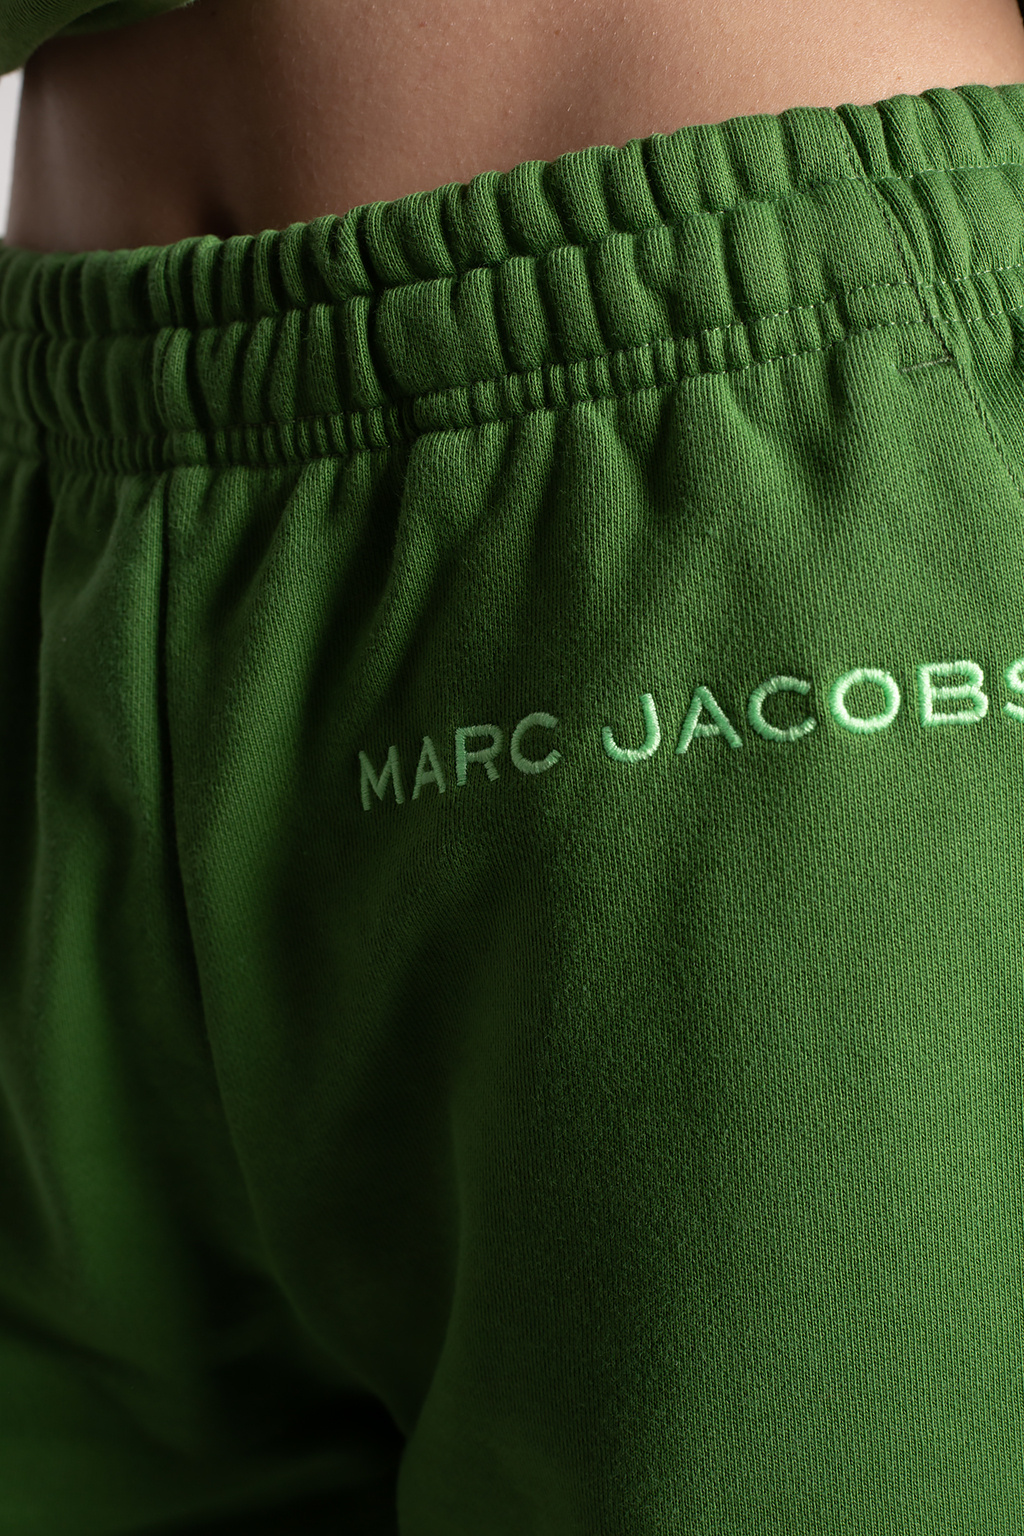 Marc Jacobs Daisy Marc Jacobs Eau So Fresh Skies Limited Edition Eau de Toilette 75ml